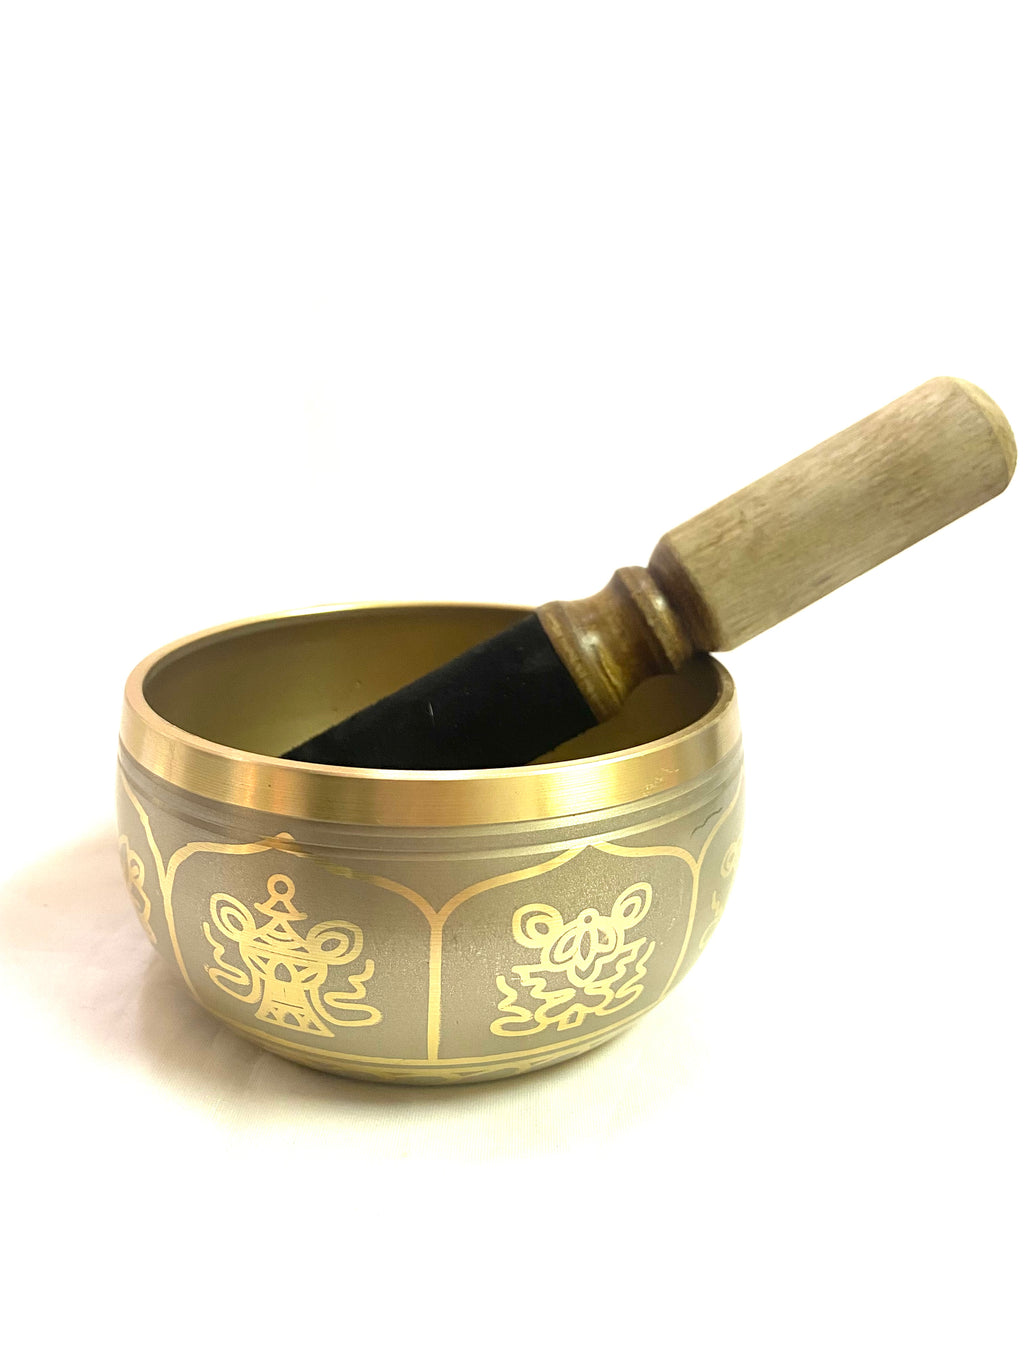 Gold Tibetan Singing bowl 4" - Lighten Up Shop